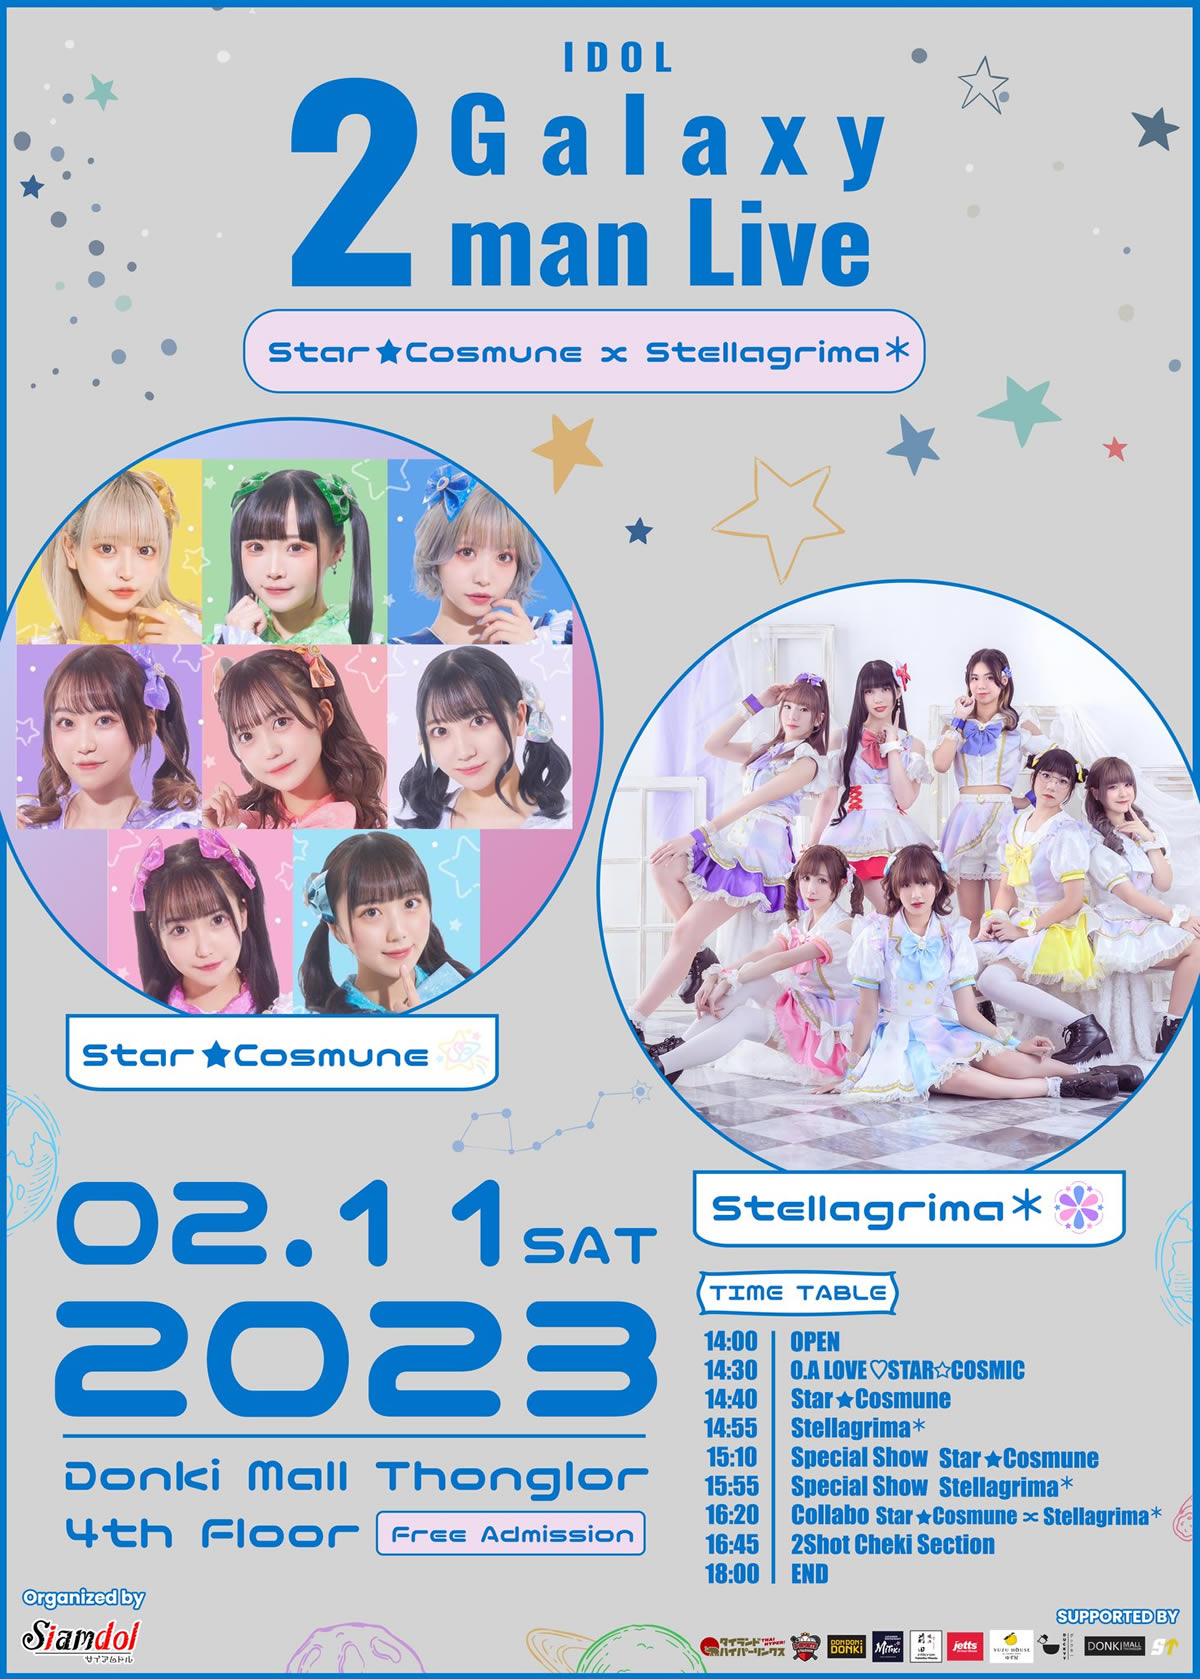 輝星★Cosμ’n.とステラグリマ＊のツーマンライブ「IDOL Galaxy 2man Live」が2月11日開催